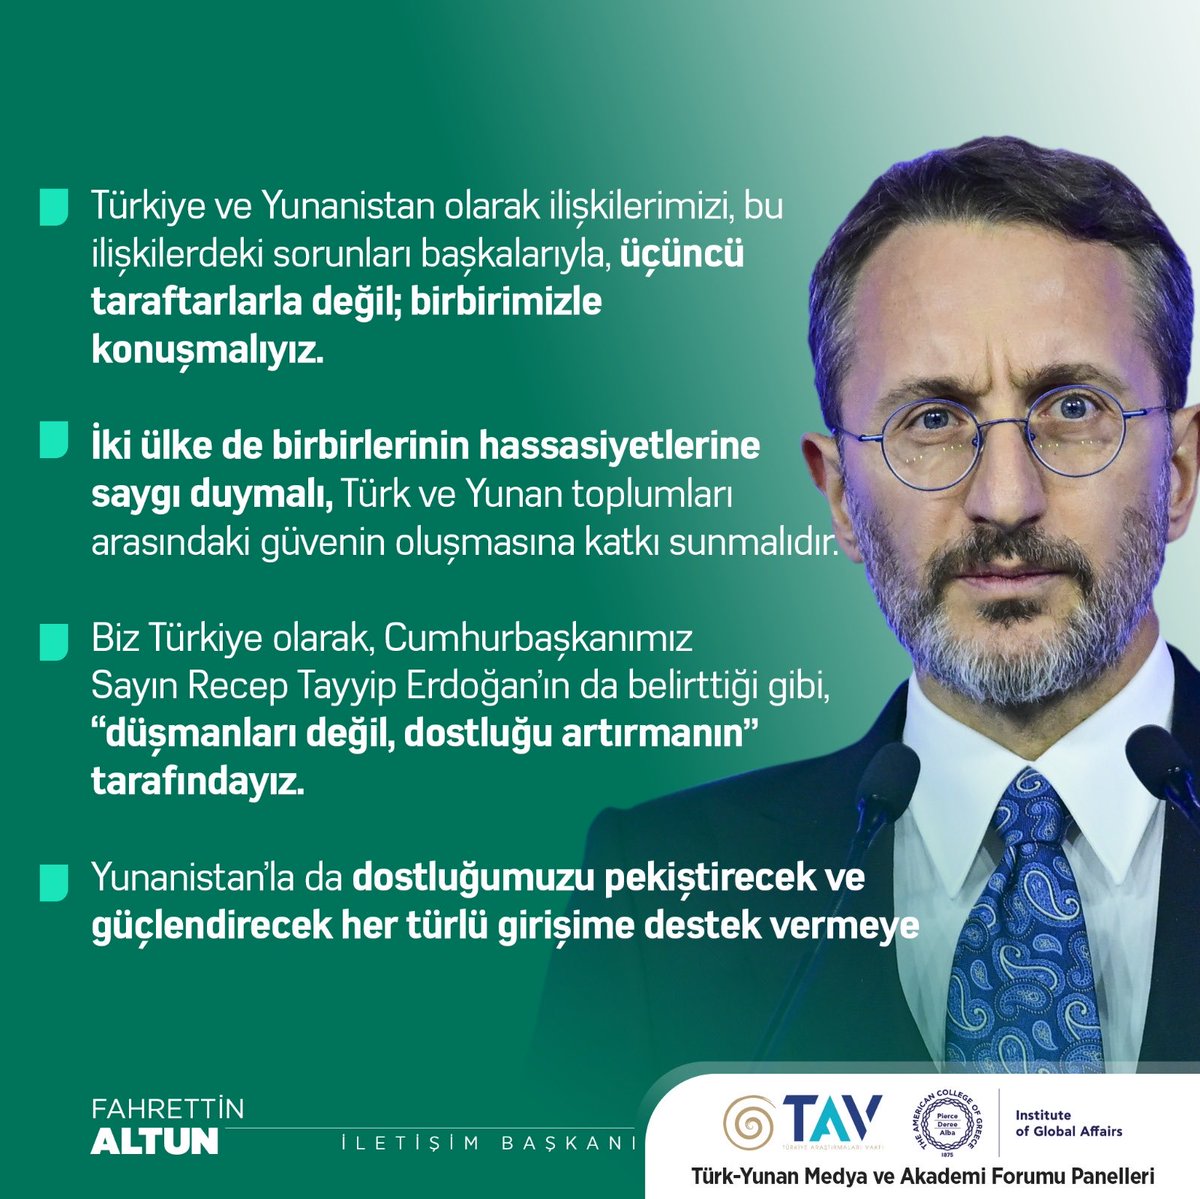 İletişim Başkanı Fahrettin Altun (@fahrettinaltun): '(Türk-Yunan Medya ve Akademi Forumu) Biz, Cumhurbaşkanımızın belirttiği gibi, 'düşmanları değil, dostluğu artırmanın' tarafındayız. Yunanistan’la dostluğumuzu güçlendirecek her türlü girişime destek vermeye hazırız.'